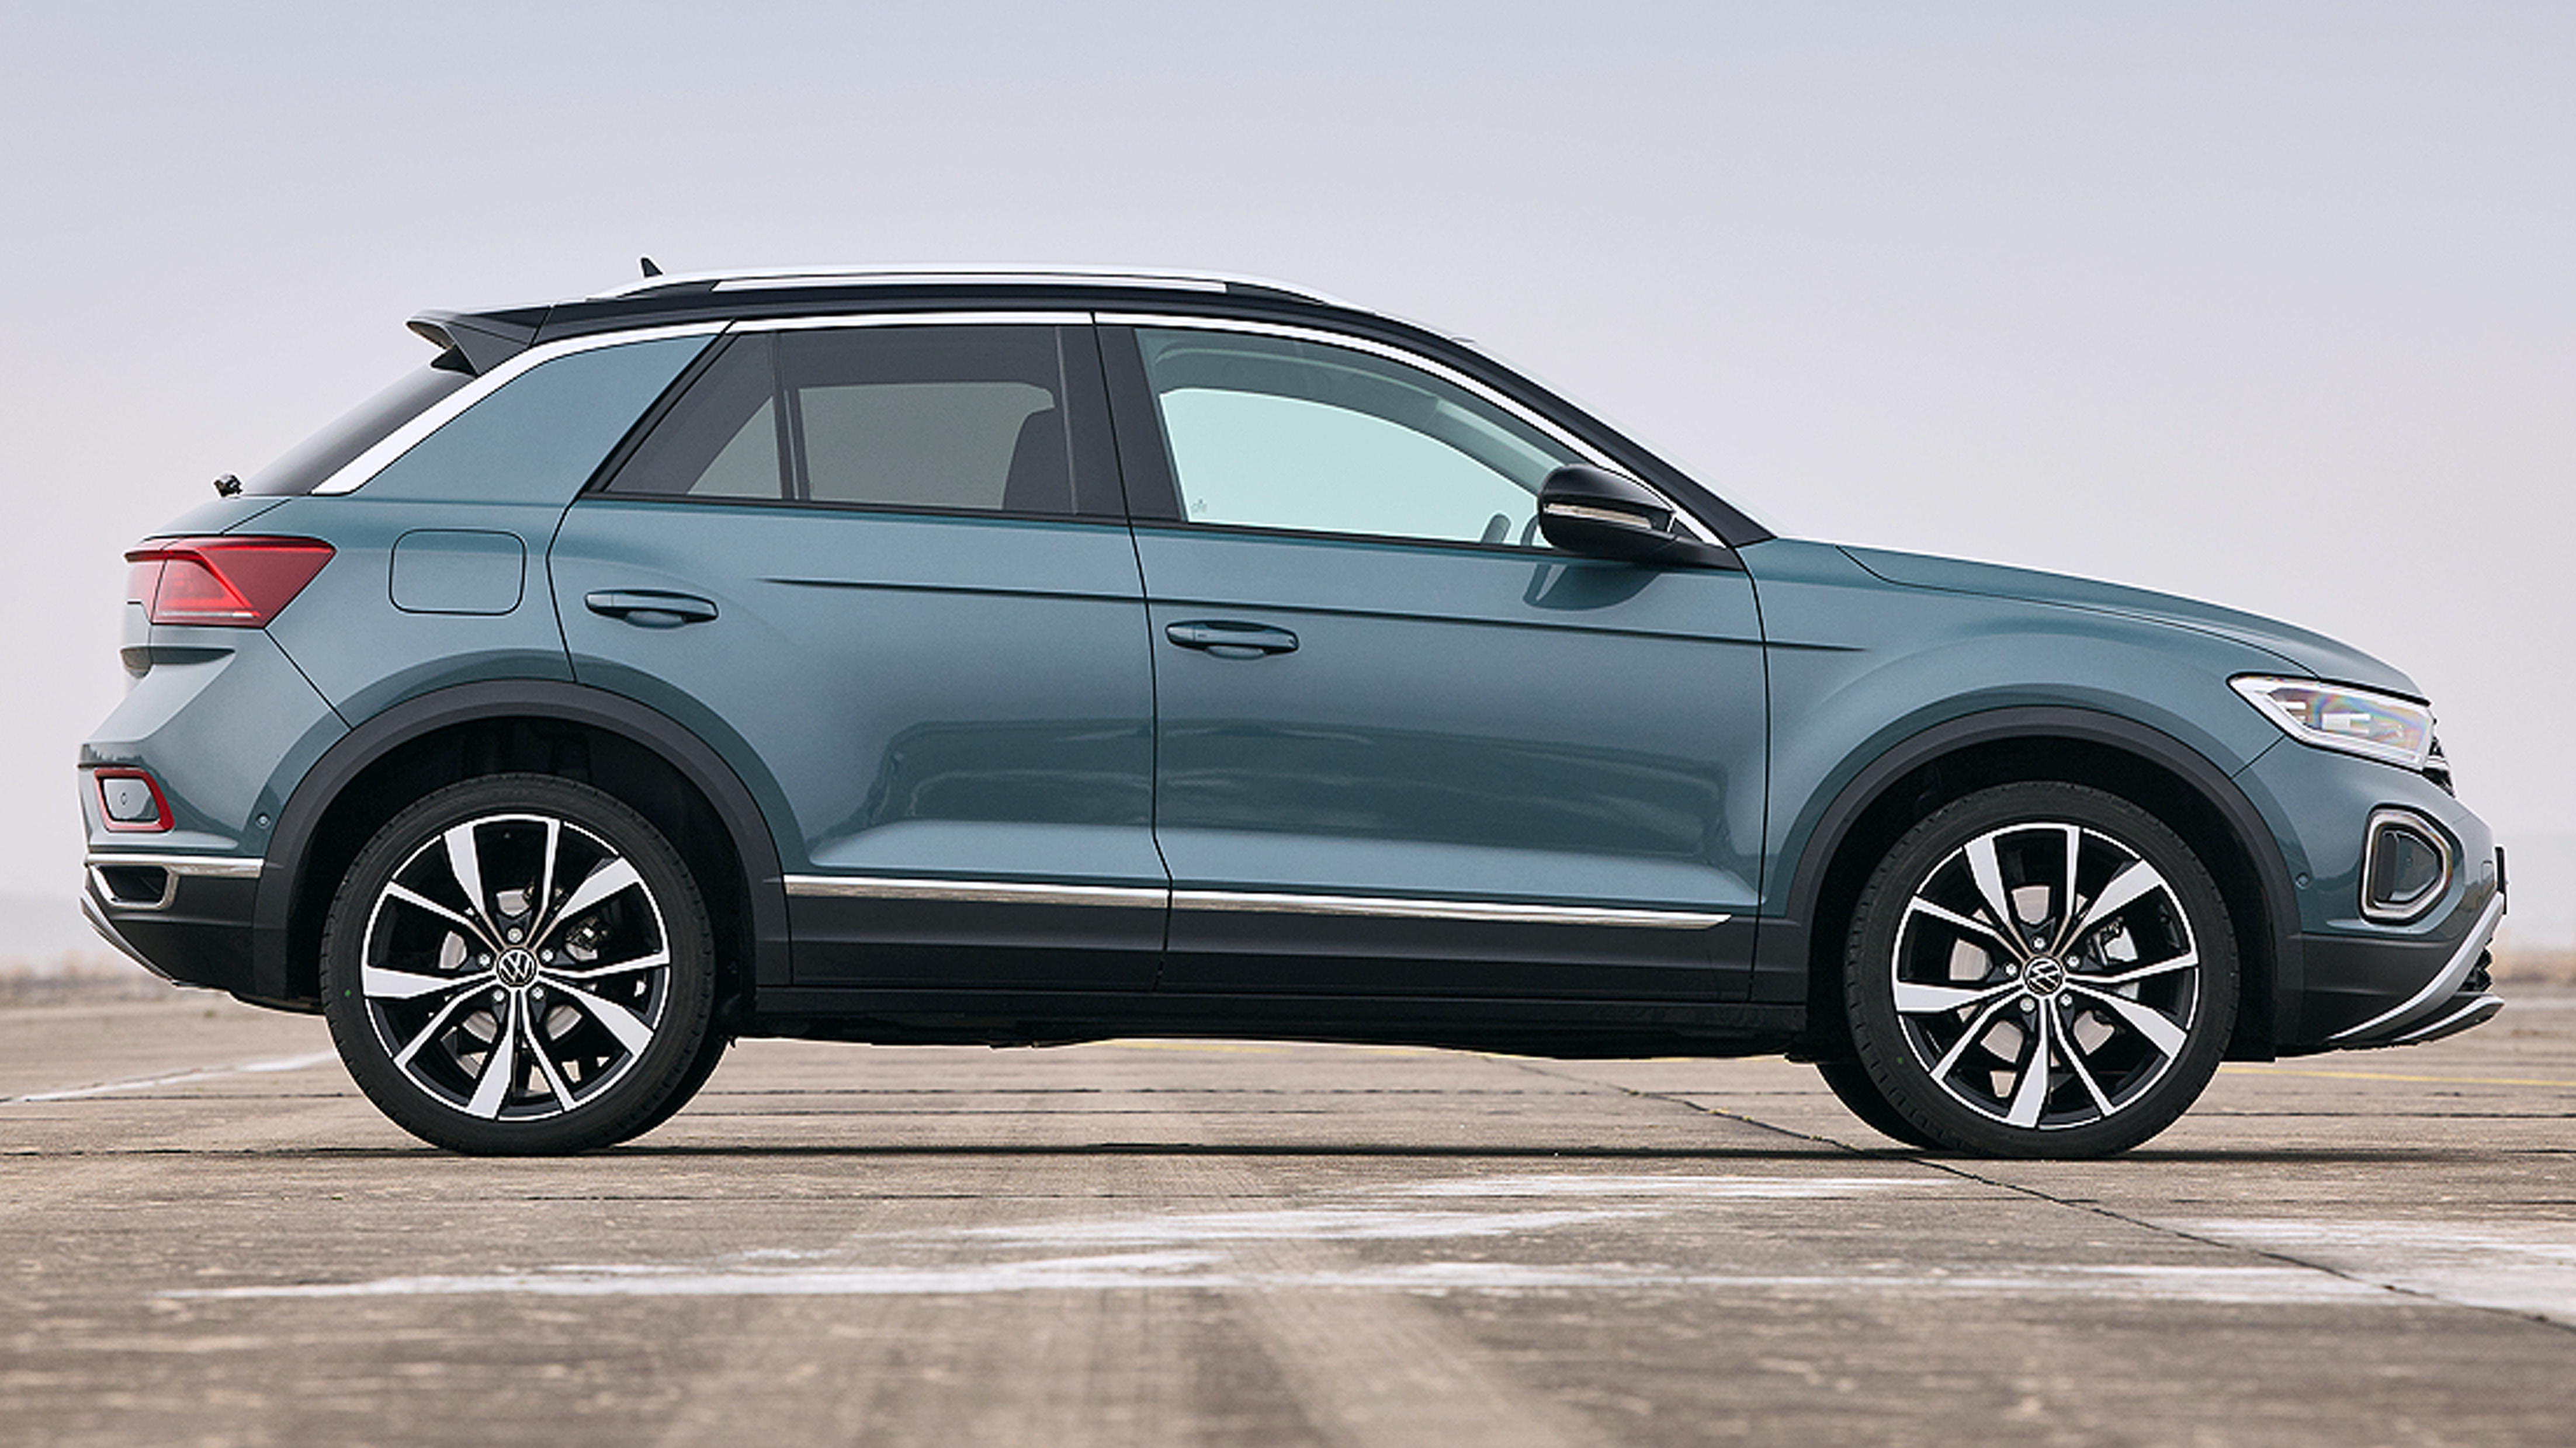 Leasing-Angebot: VW T-Roc schon ab 199 Euro brutto - AUTO BILD